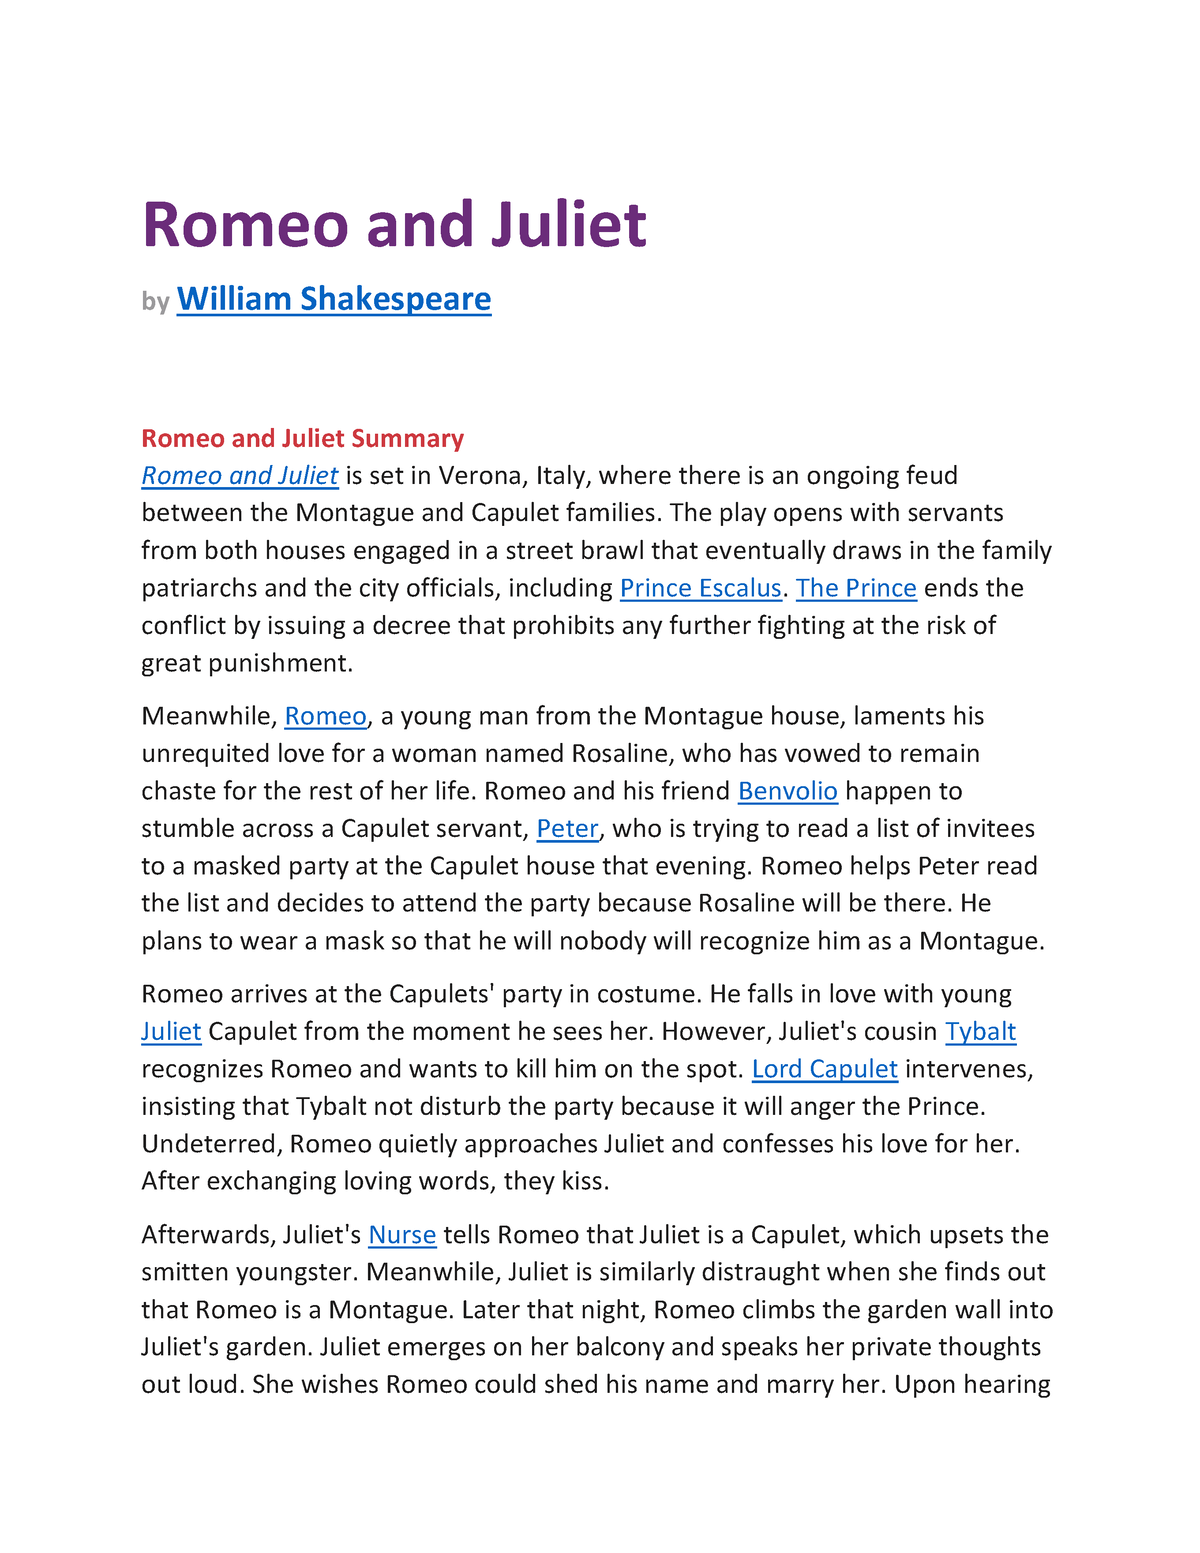 summary of romeo and juliet essay